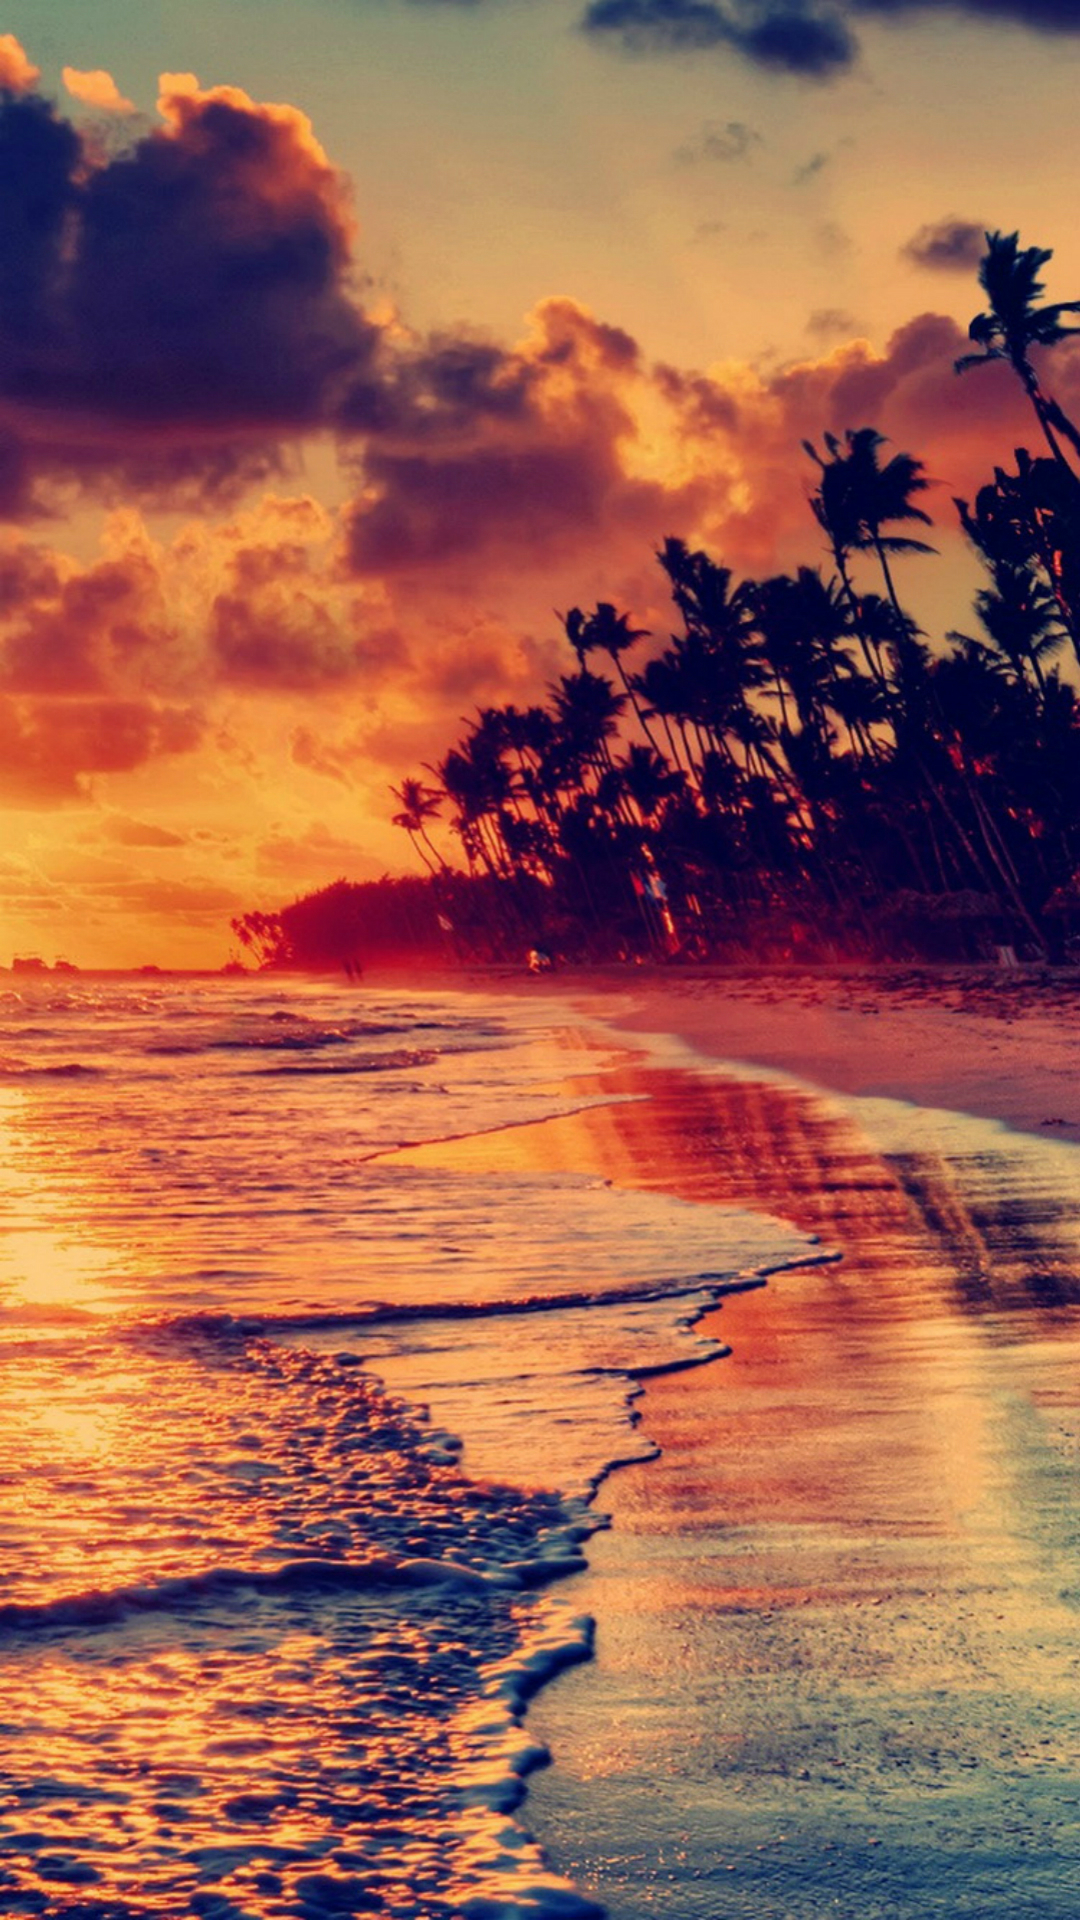 Nature-Fire-Sunset-Beach-iPhone-6-wallpaper.